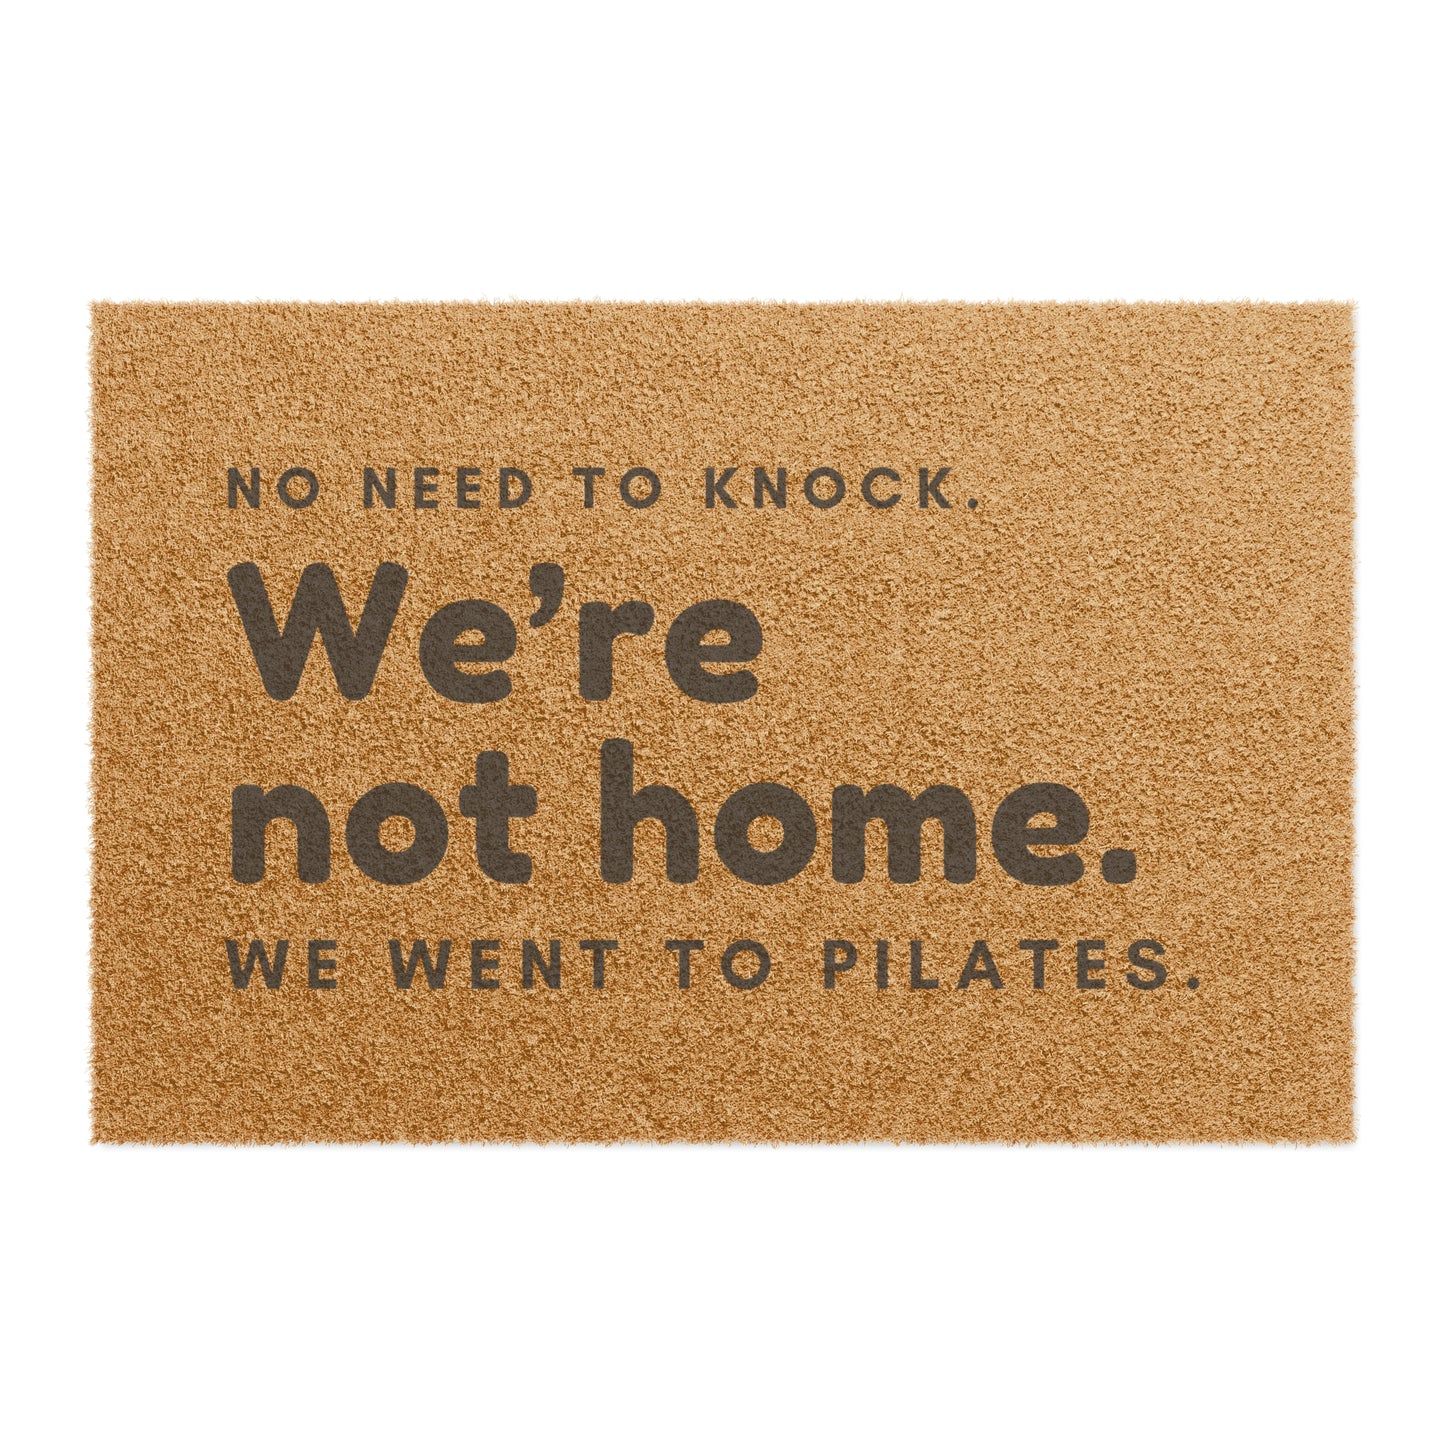 We're not Home - Pilates Doormat